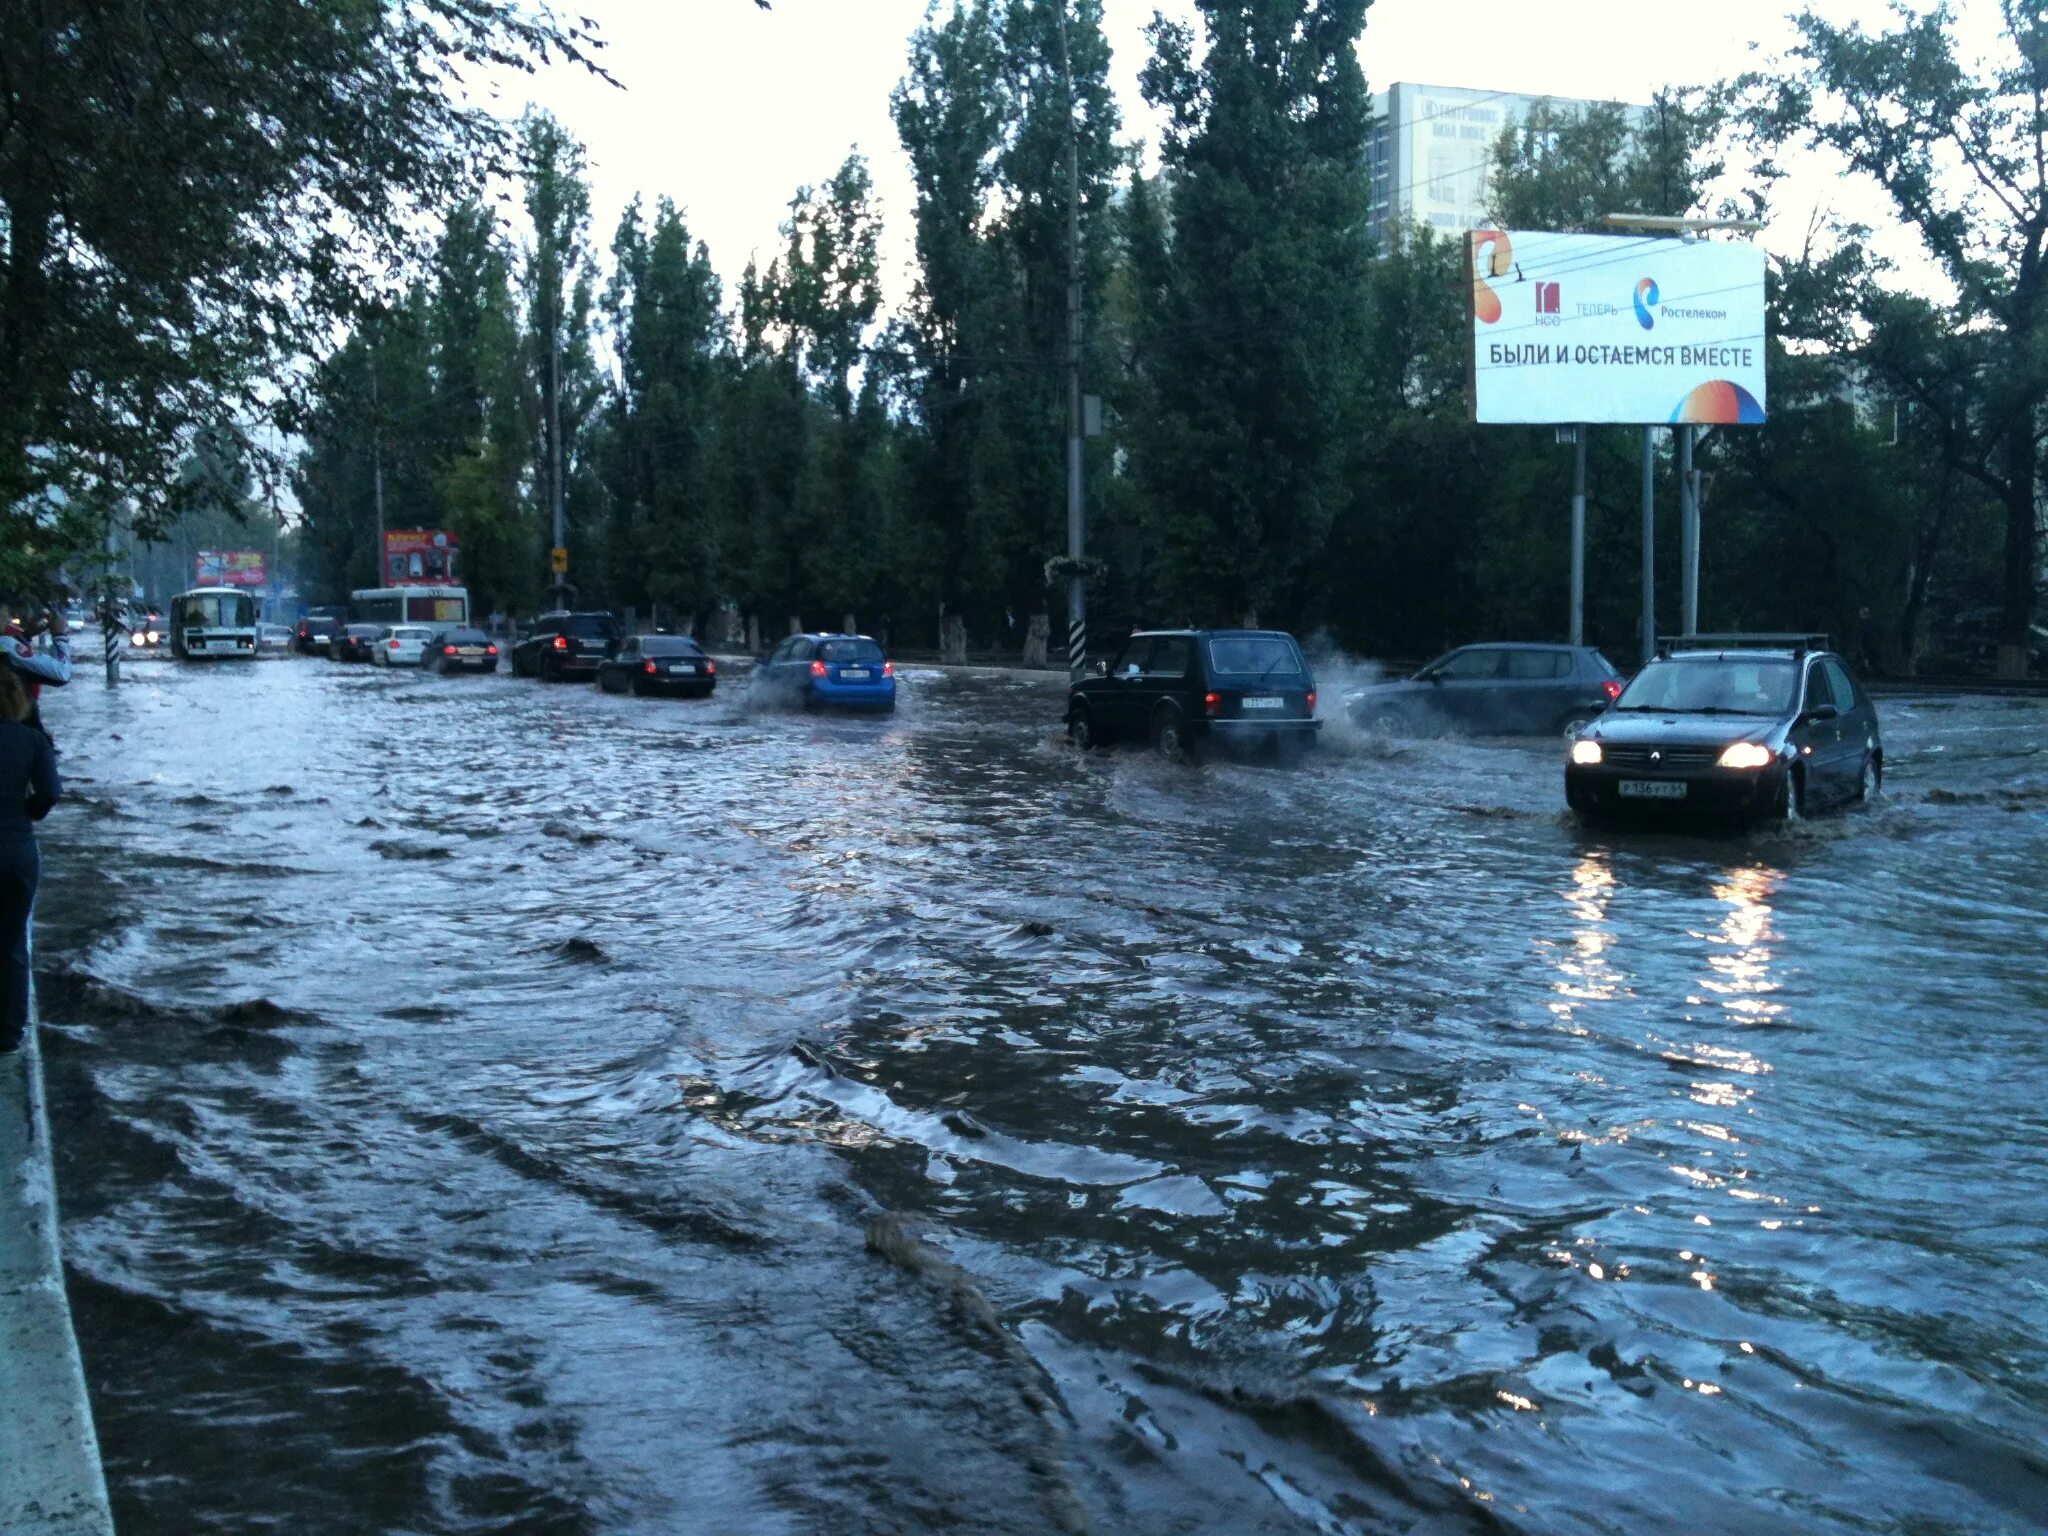 Какие улицы затопила в городе орске. Саратов дождь. Саратов проспект дождь. Дождливый проспект в Саратове. Глазок потоп.